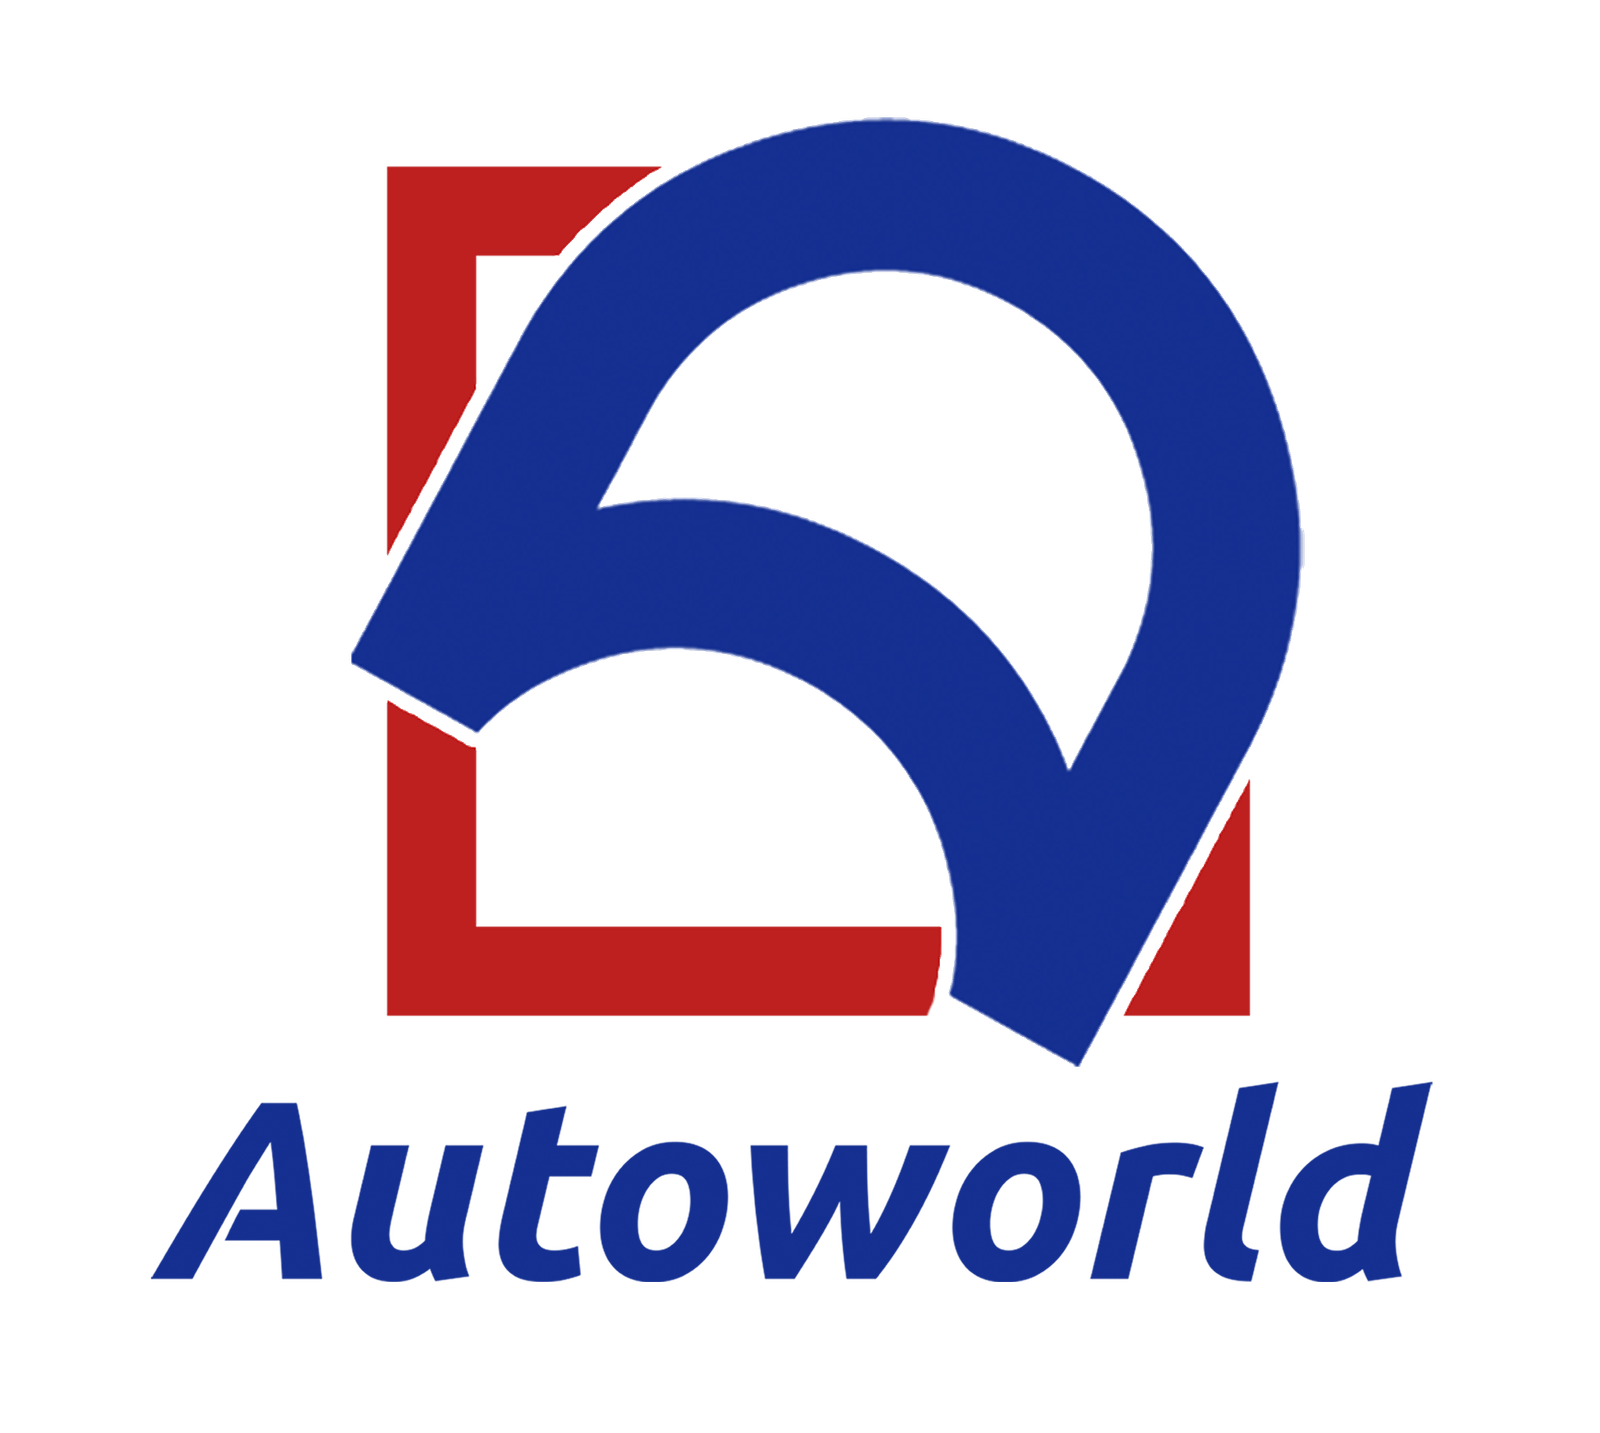 vehicleworld.net